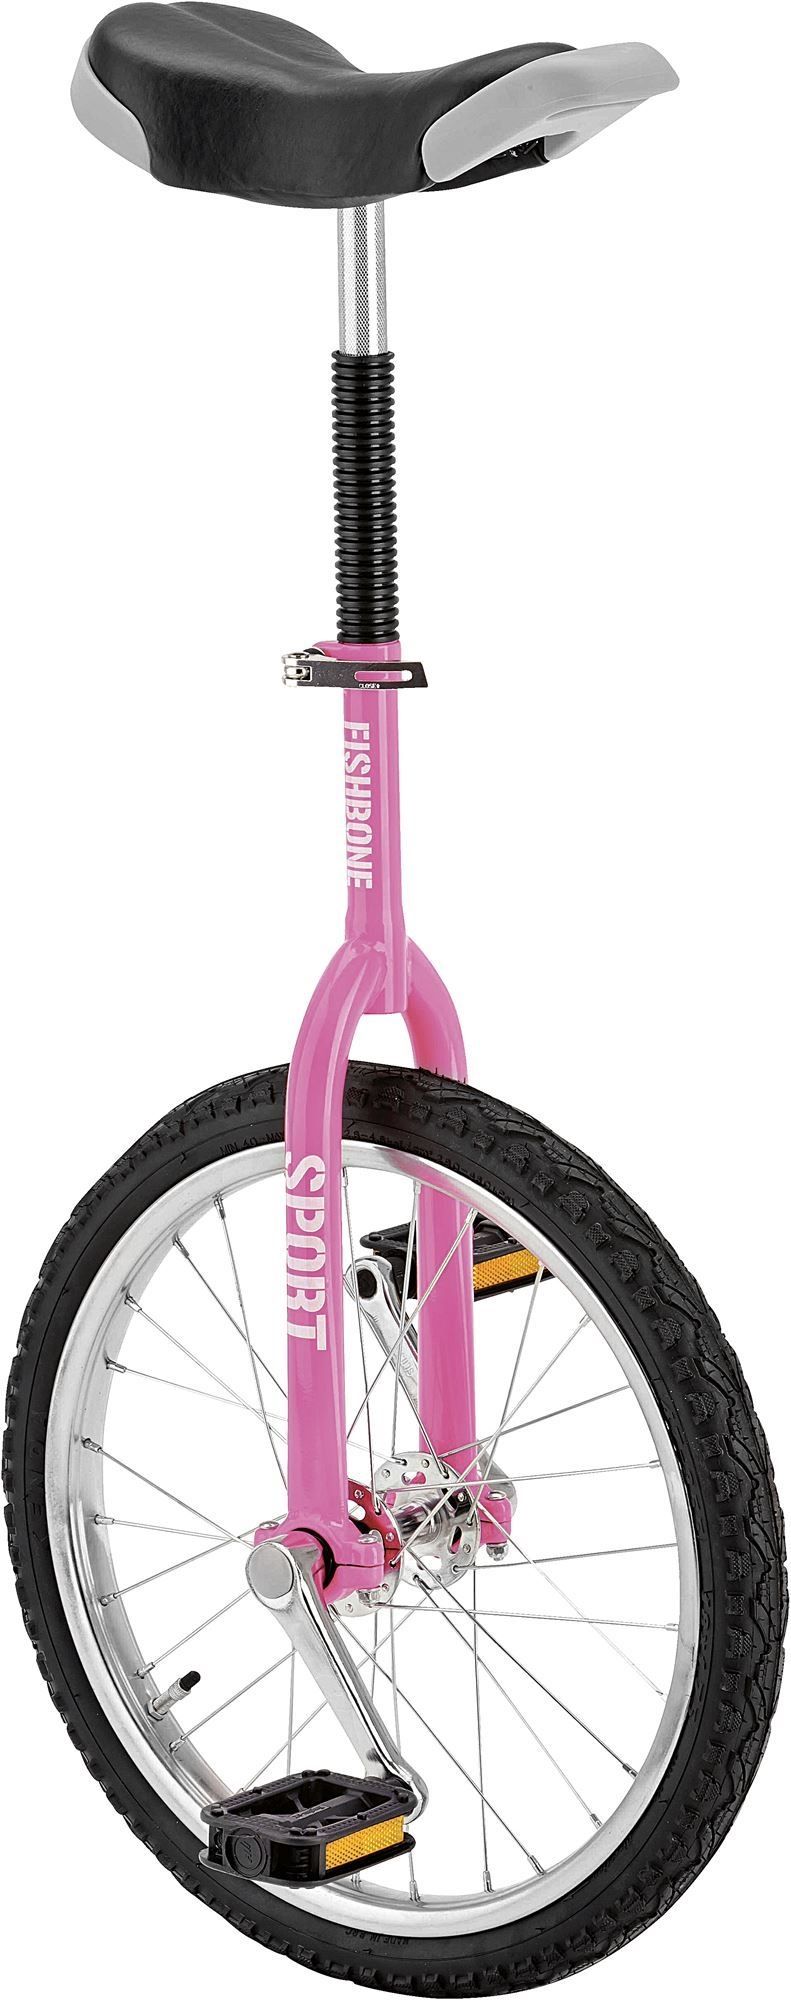 FISHBONE Einrad 18 Zoll Sport pink - Fahrrad Online Shop